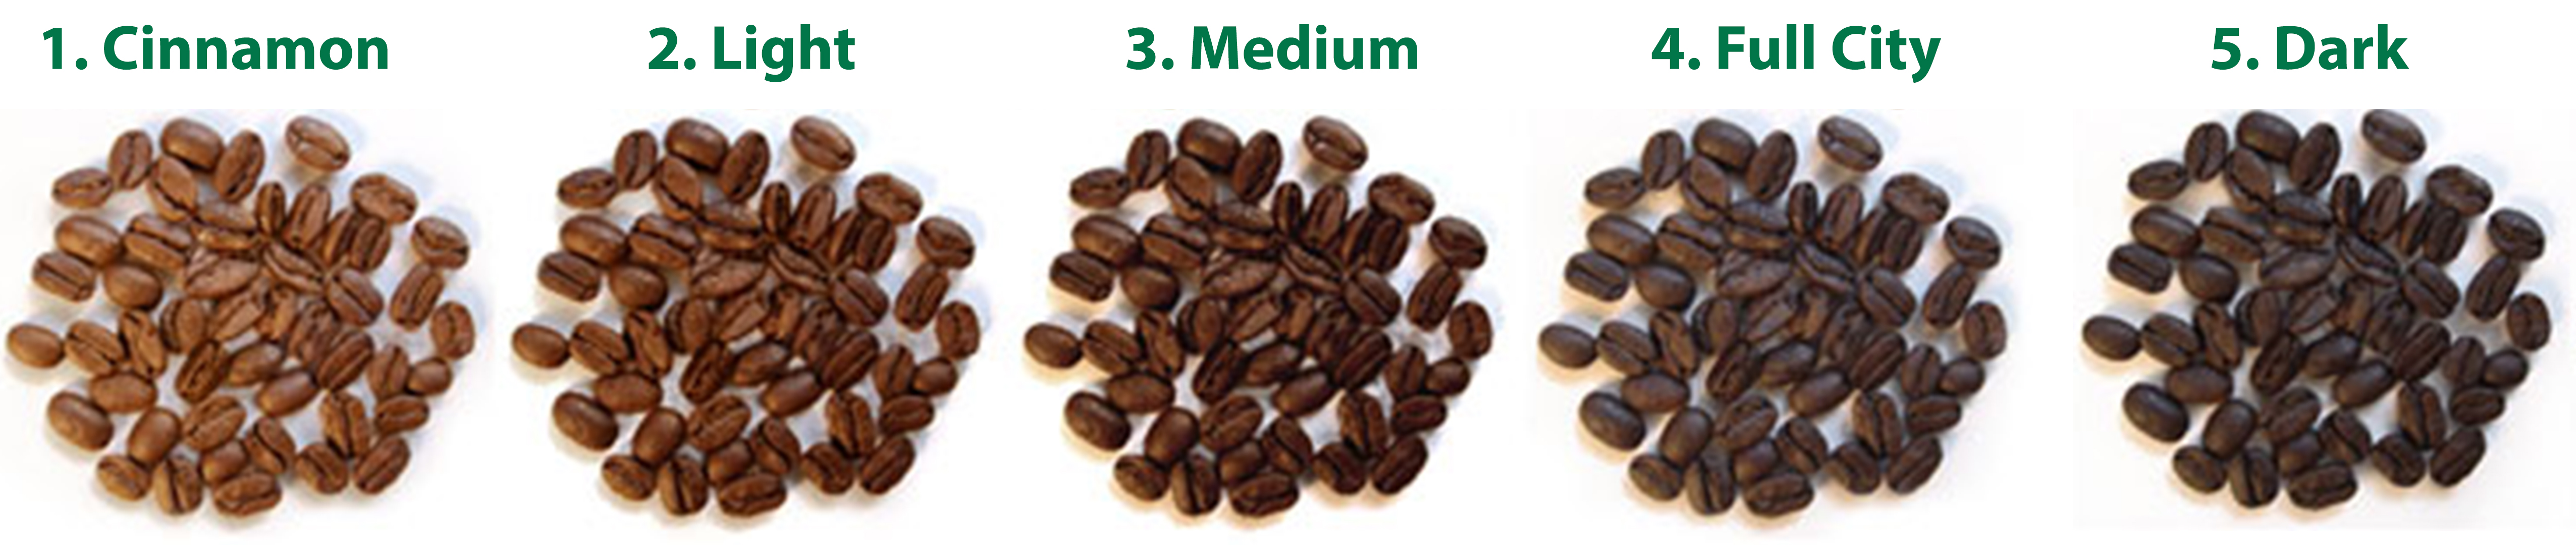 độ rang cà phê nguyên chất